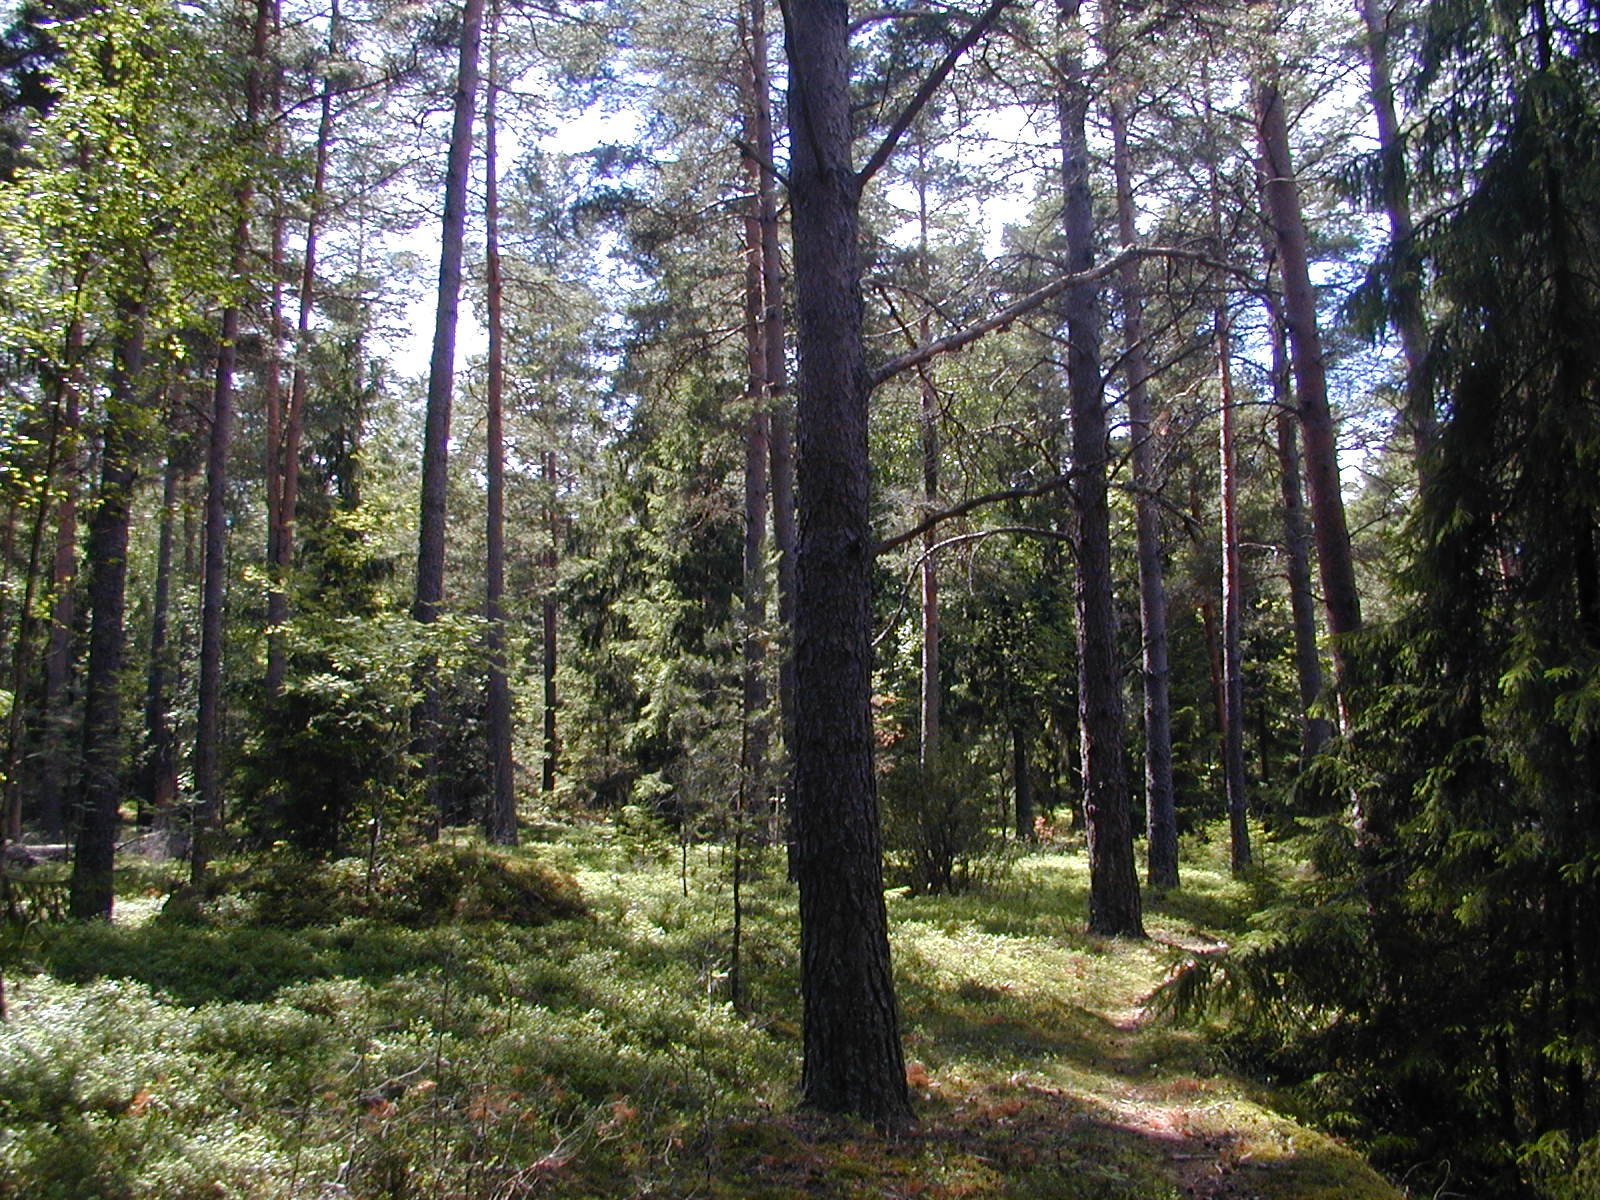 En smal stig går genom skogen. Det finns löv- och barrträd i olika storlekar.